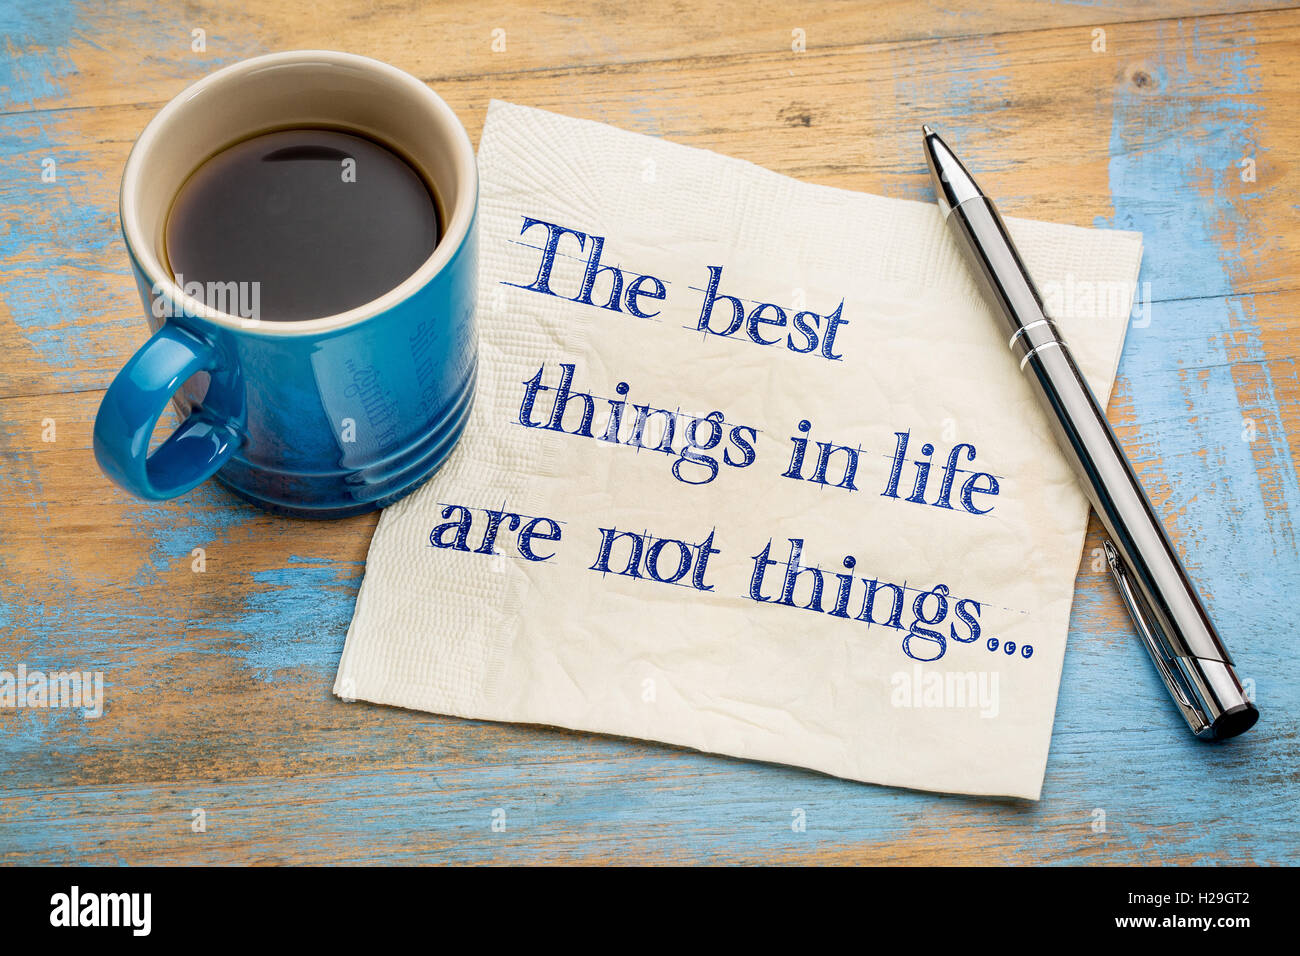 Les meilleures choses dans la vie ne sont pas des choses - écriture sur une serviette avec une tasse de café expresso Banque D'Images